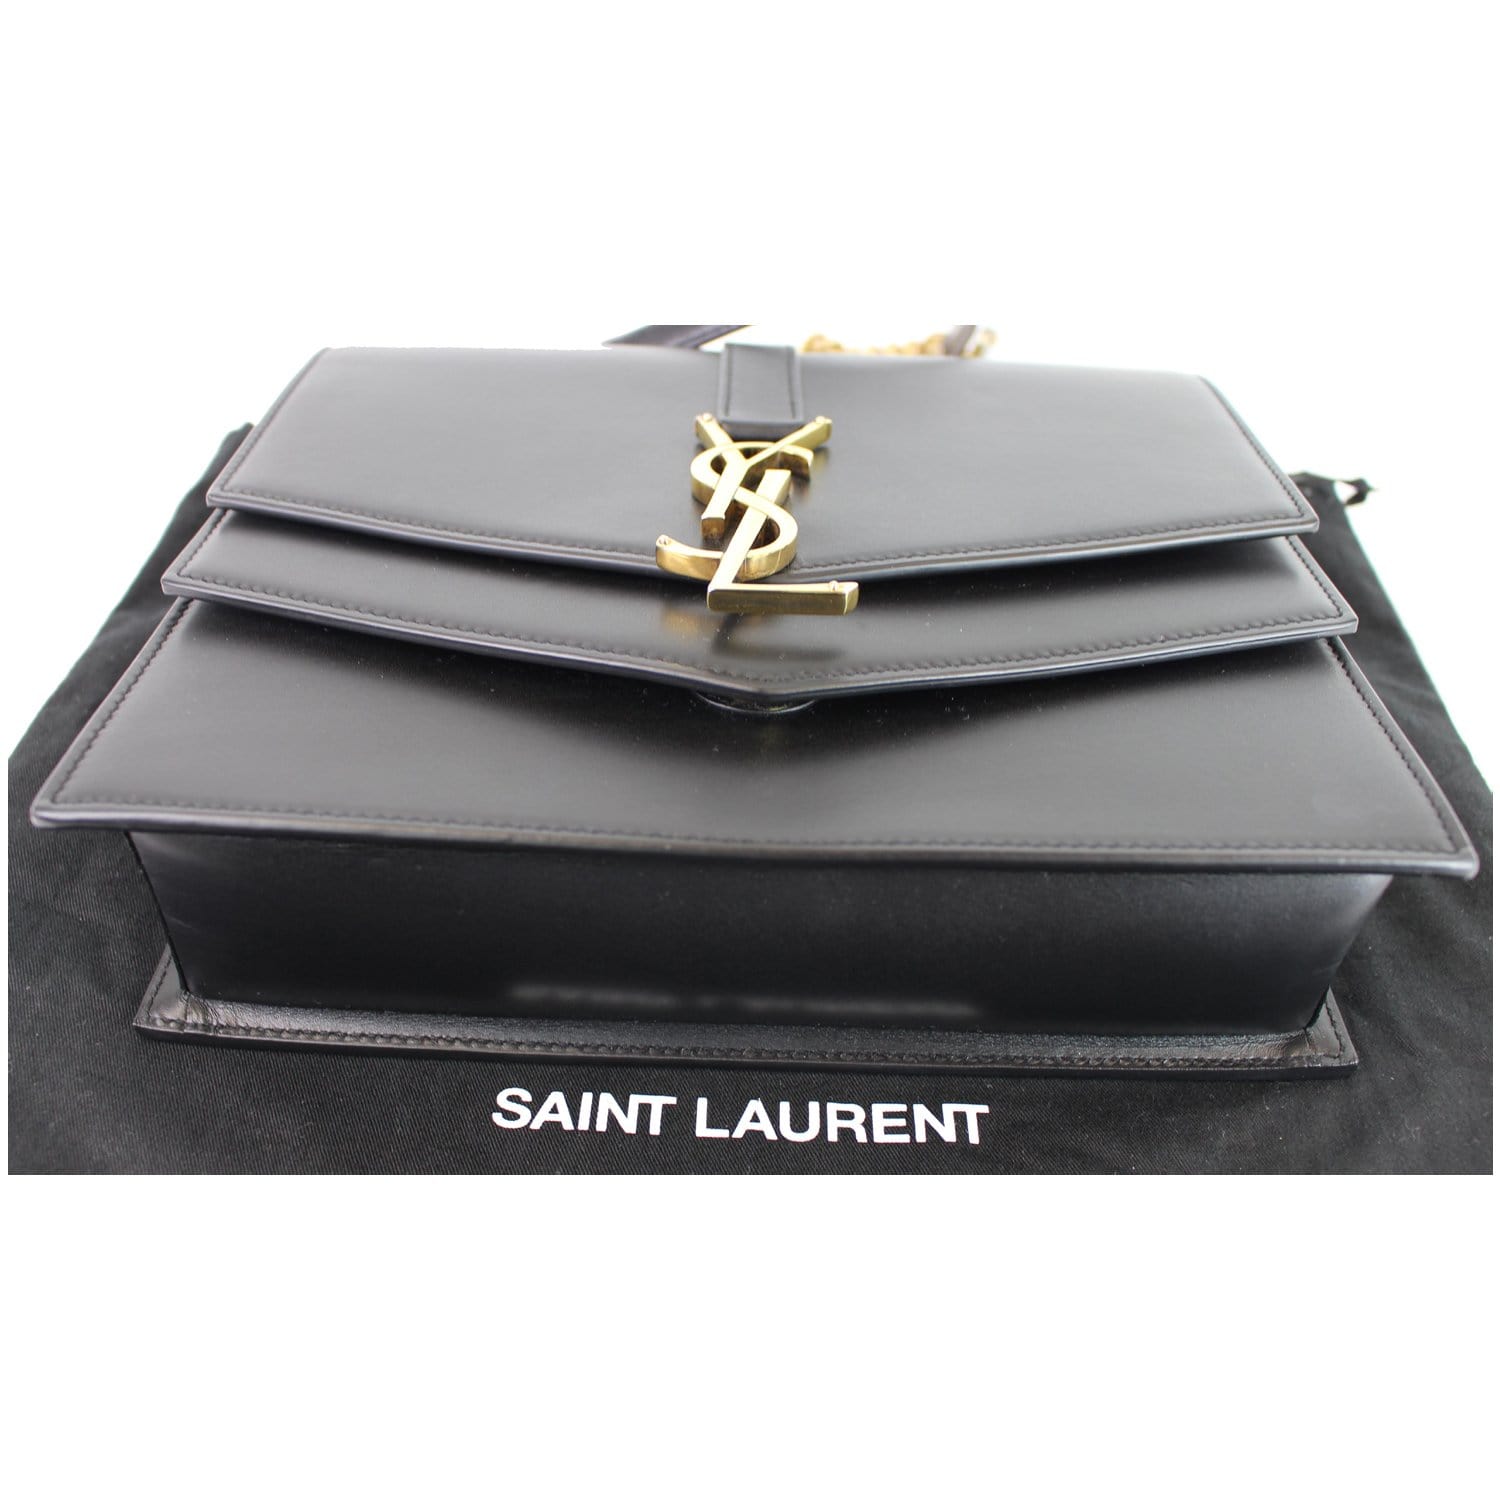 Saint Laurent Double Flap Cross-Body Bag